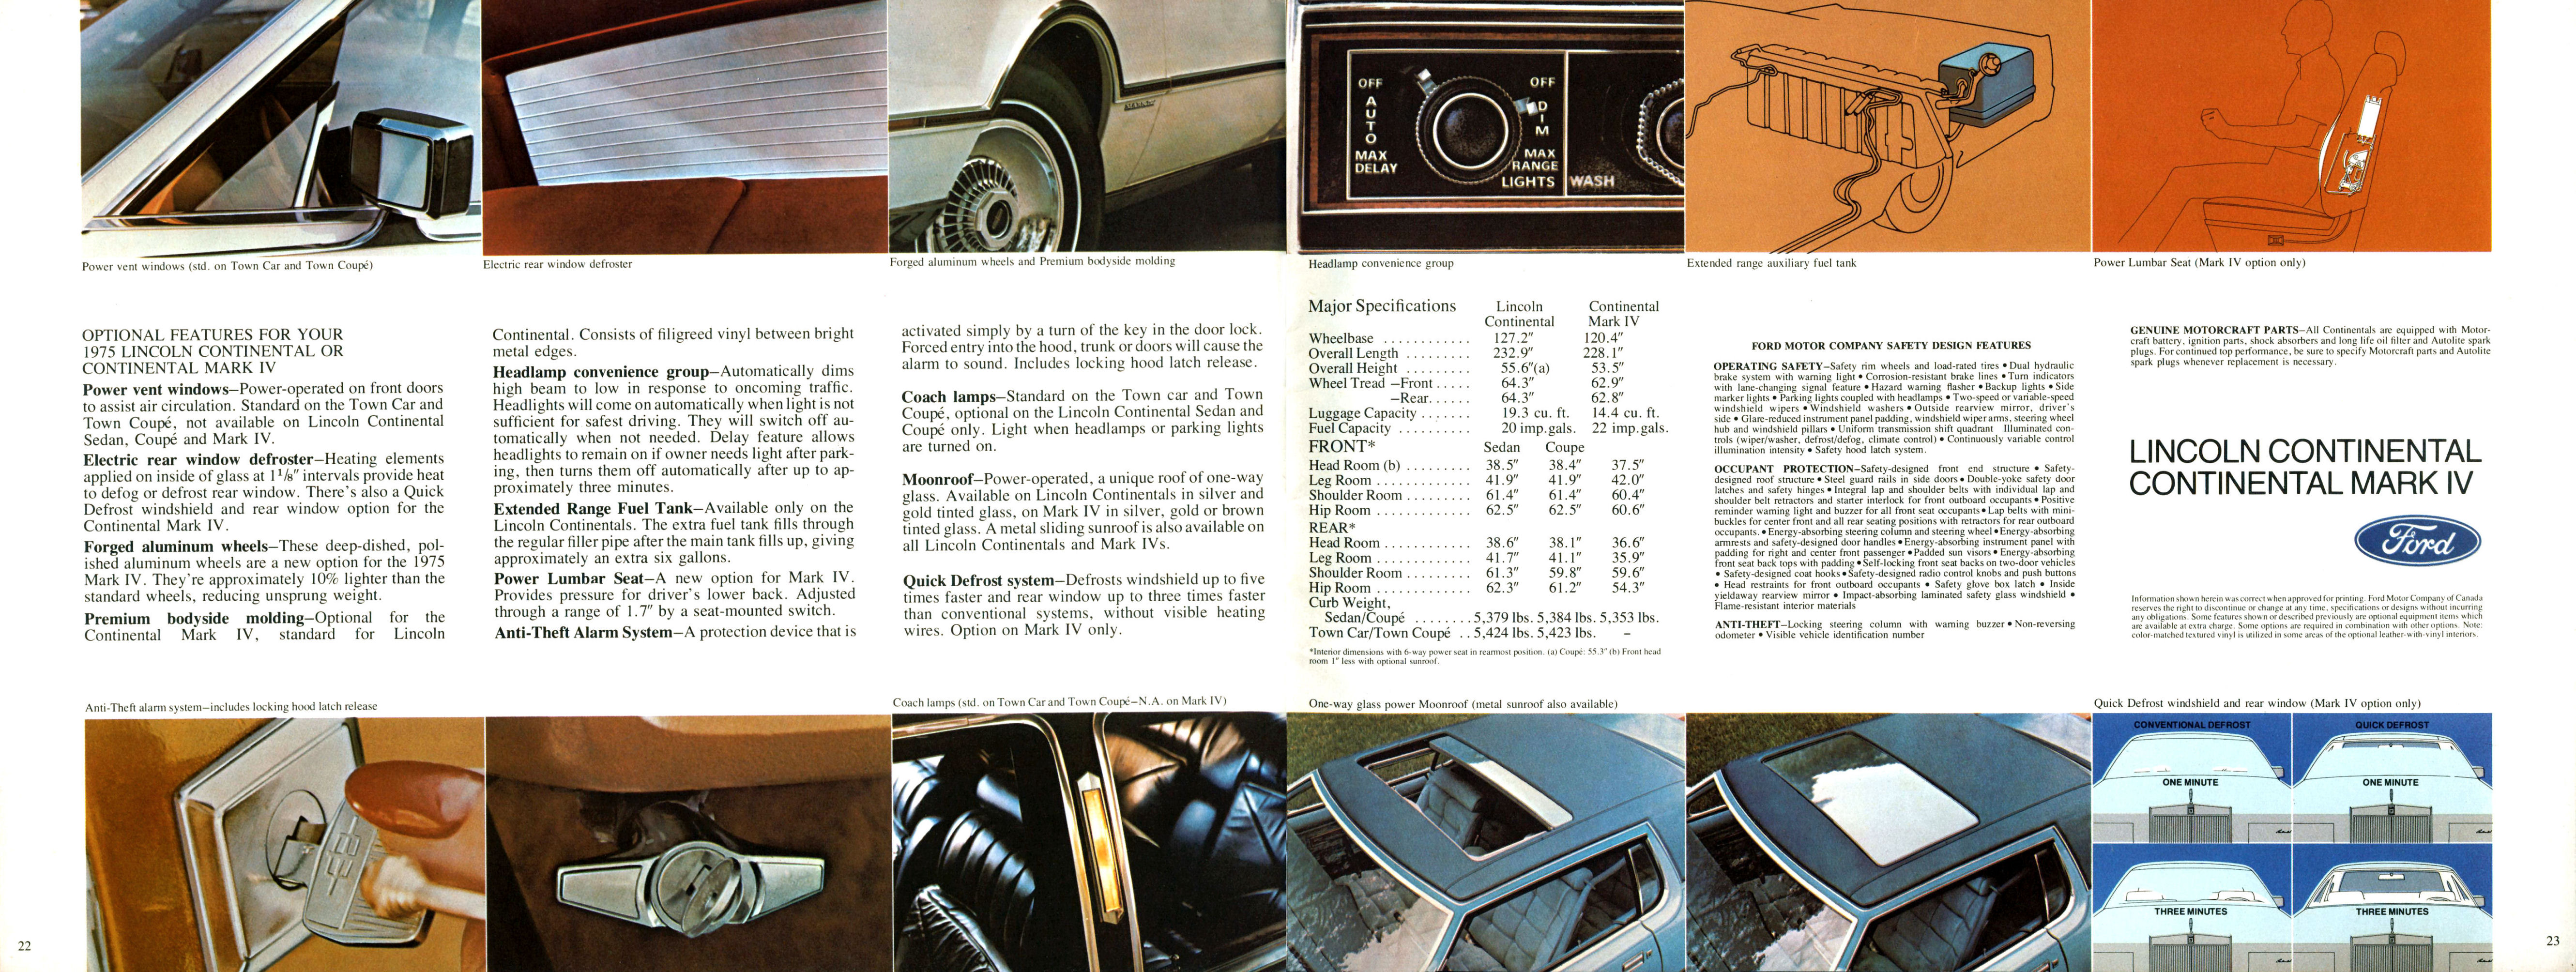 1975_Continentals_Cdn-22-23